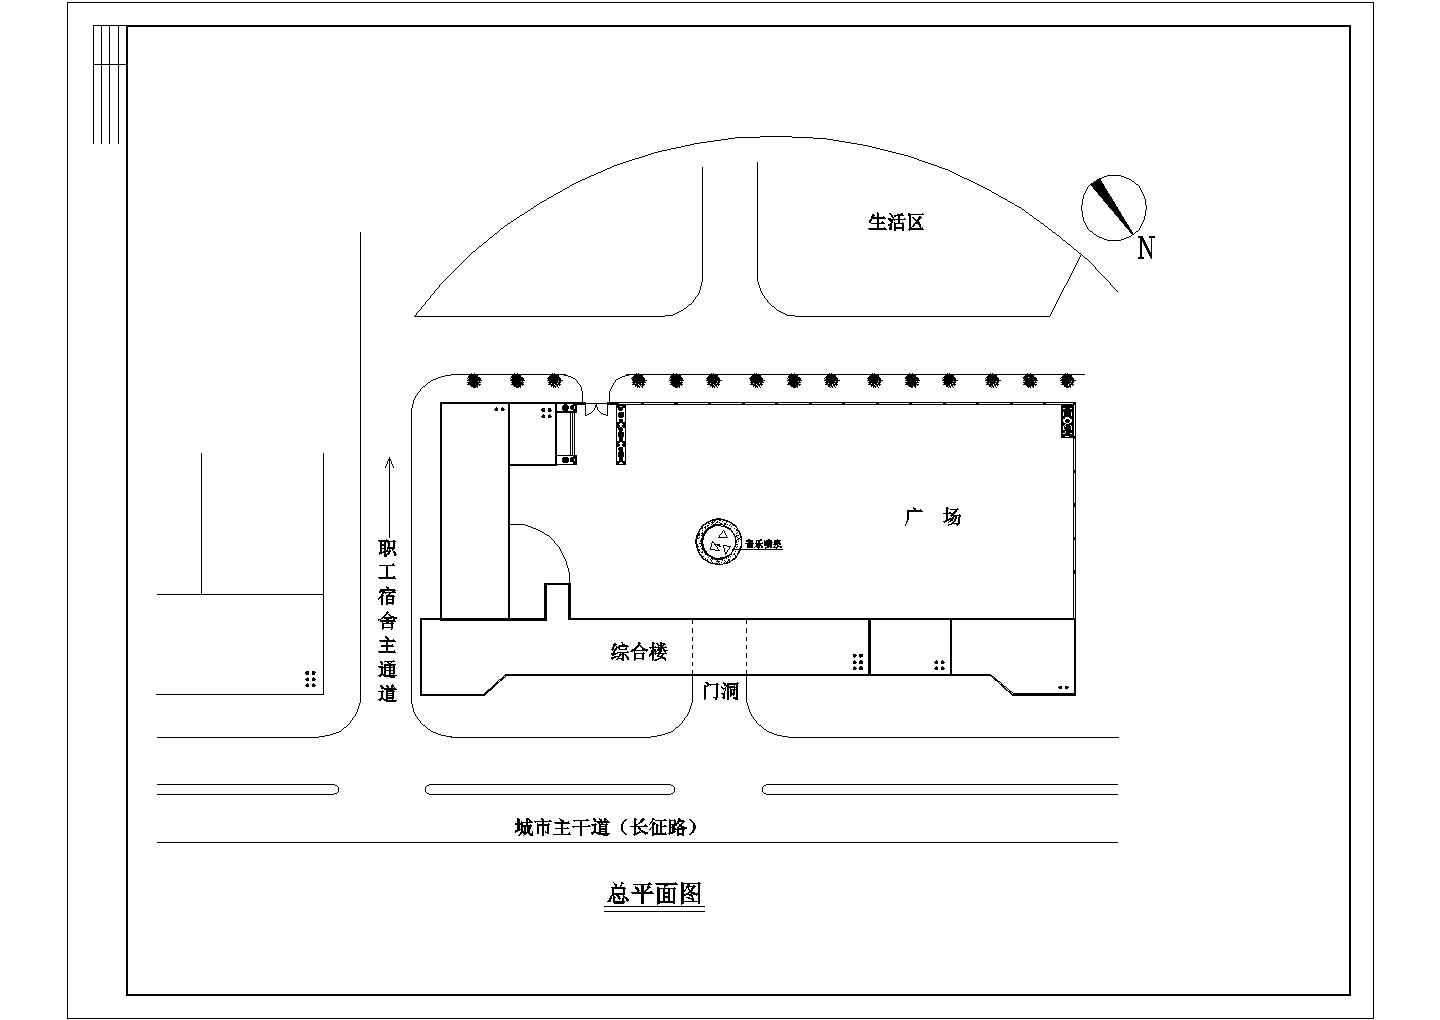 乌镇景区附近某宾馆整套装修方案cad平面施工图